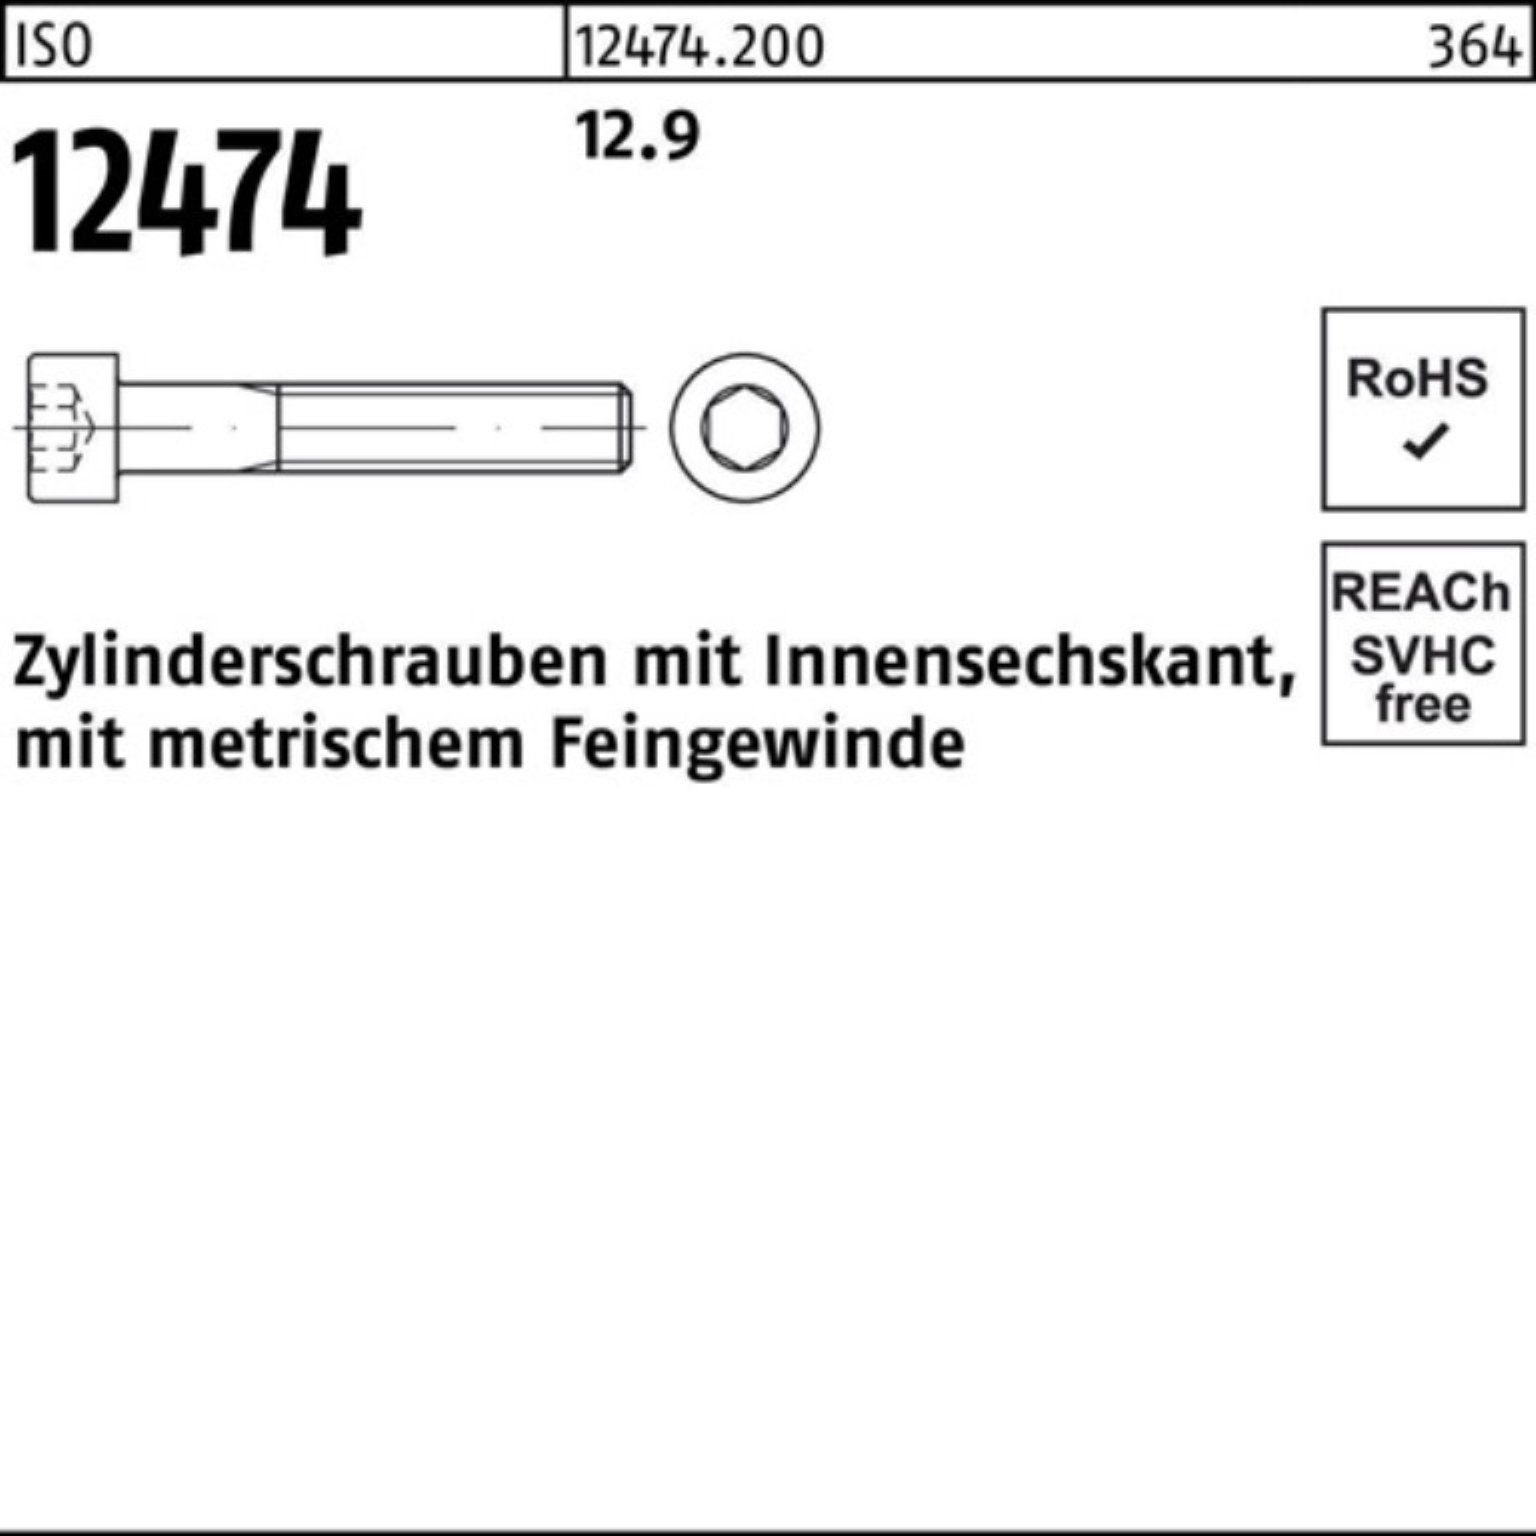 ISO St 100er 60 12.9 Zylinderschraube Zylinderschraube Innen-6kt Pack 12474 Reyher 25 M20x1,5x